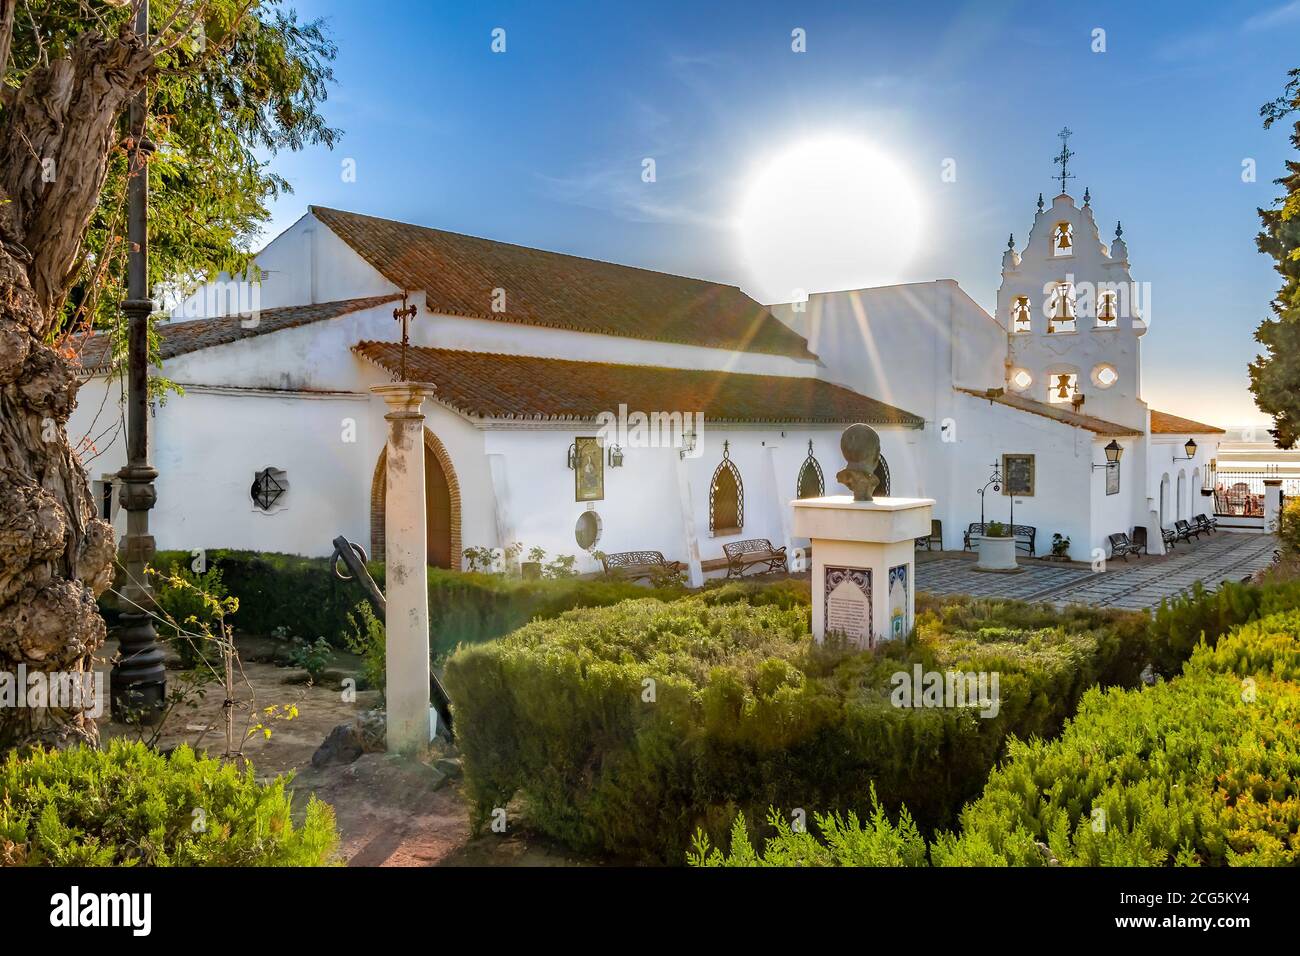 Huelva, Espagne - 8 septembre 2020: Vue du Sanctuaire Virgen de la Cinta depuis les Jardins, rétroéclairé avec des torches solaires, vierge patron de huelva depuis 1586 Banque D'Images